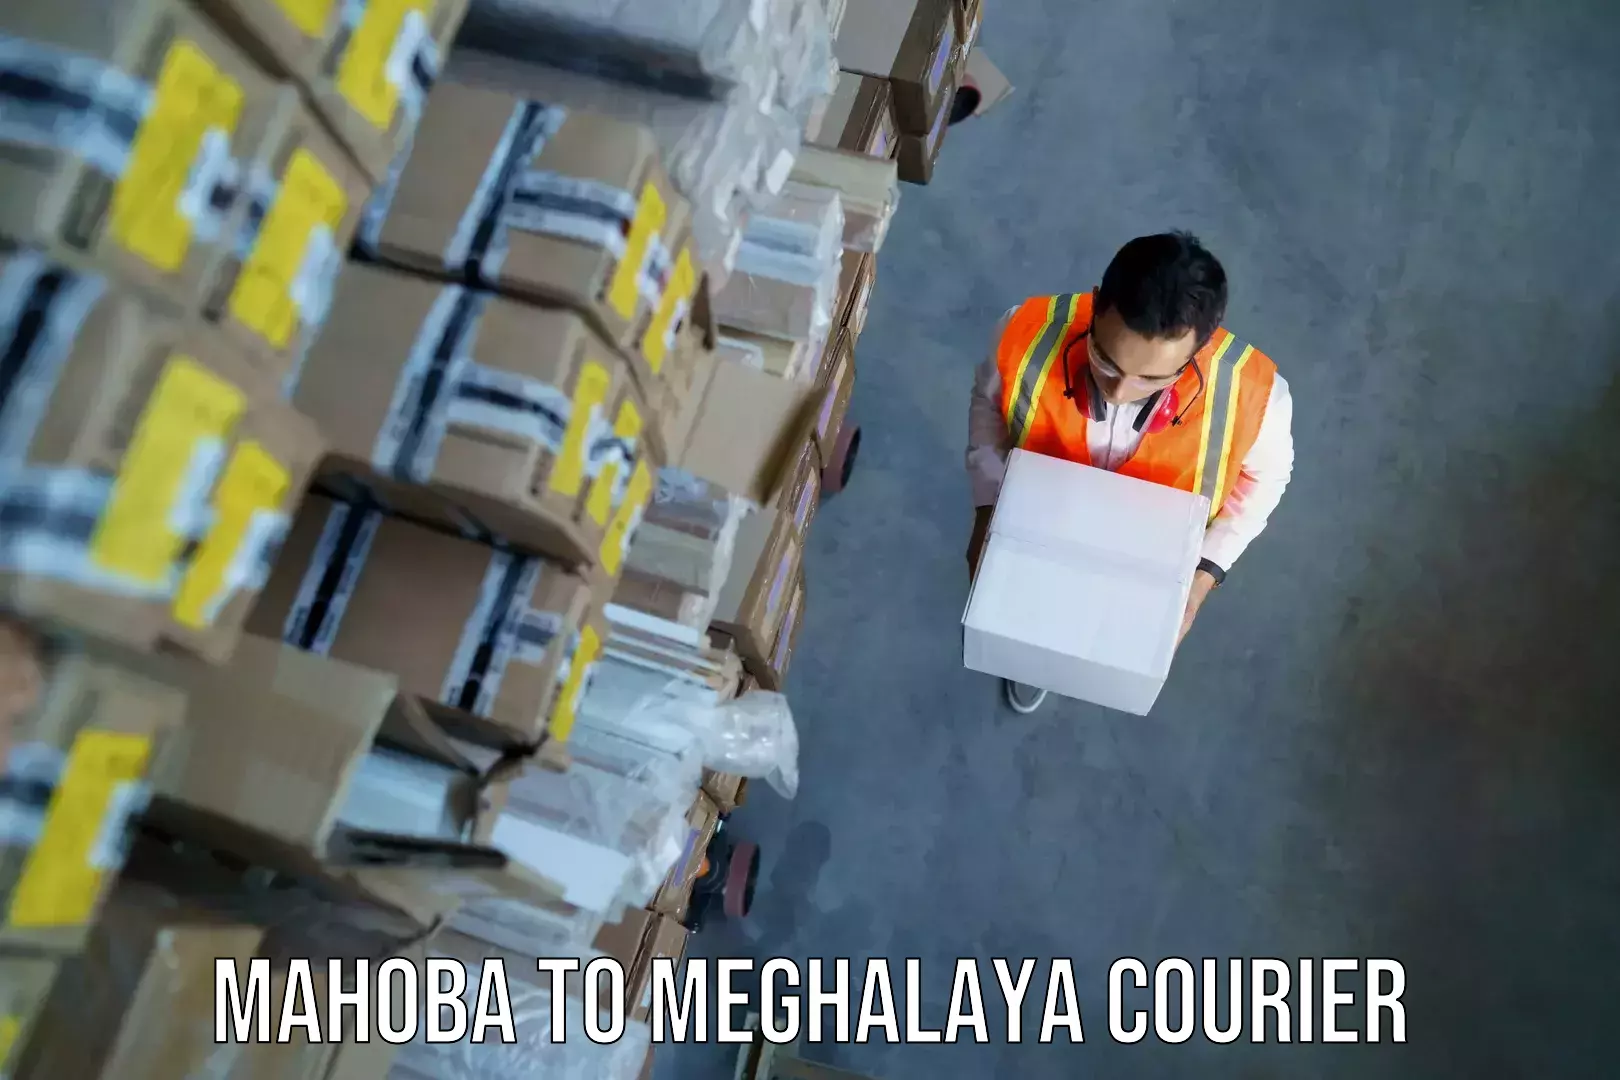 Baggage courier insights Mahoba to Meghalaya